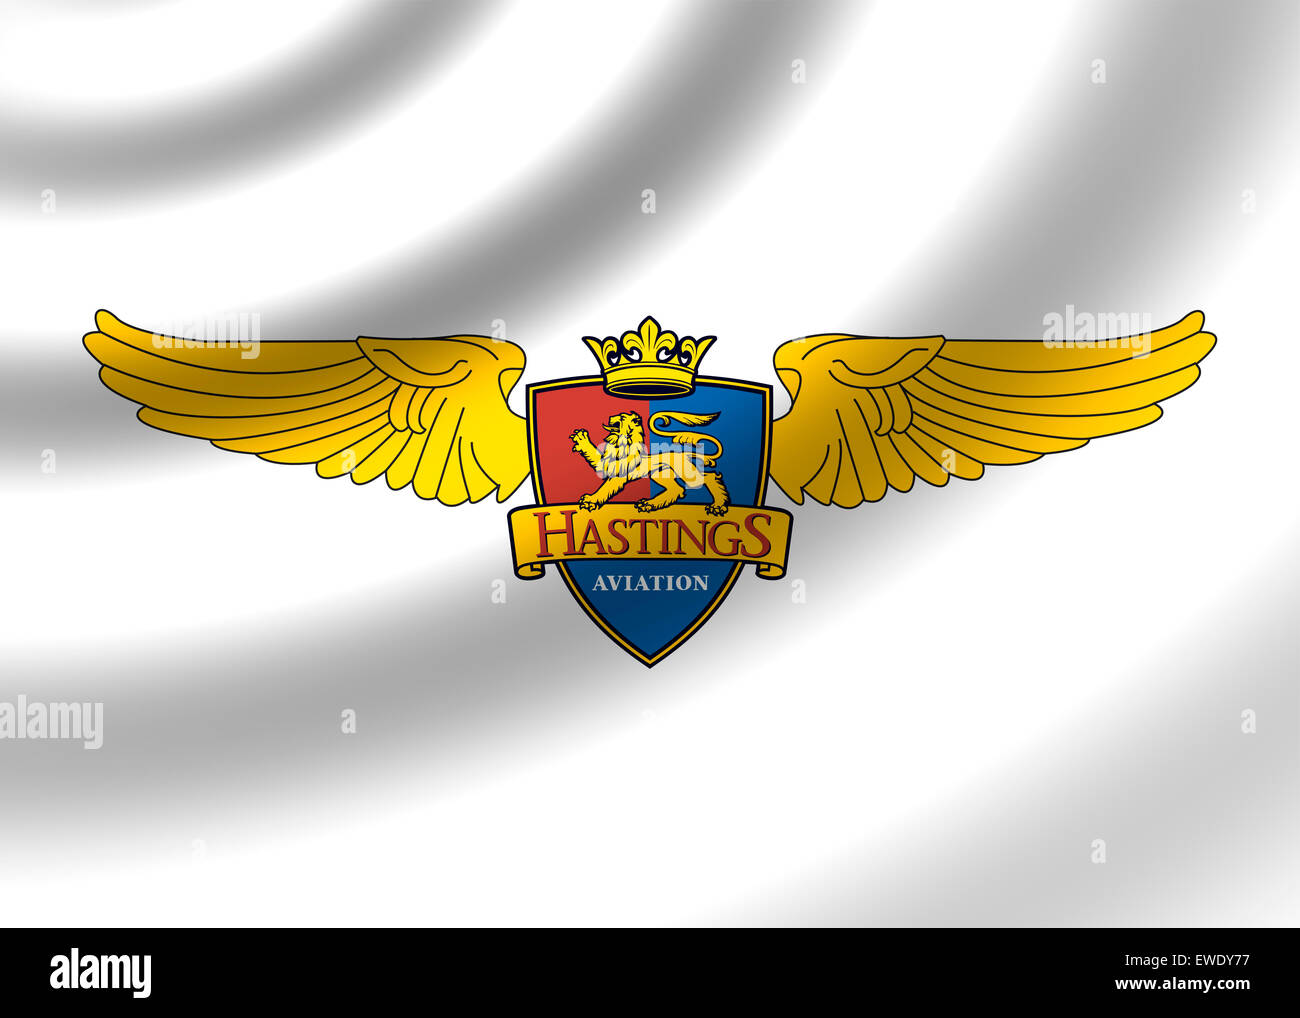 Hastings Aviation logo icon flag symbol emblem sign Stock Photo